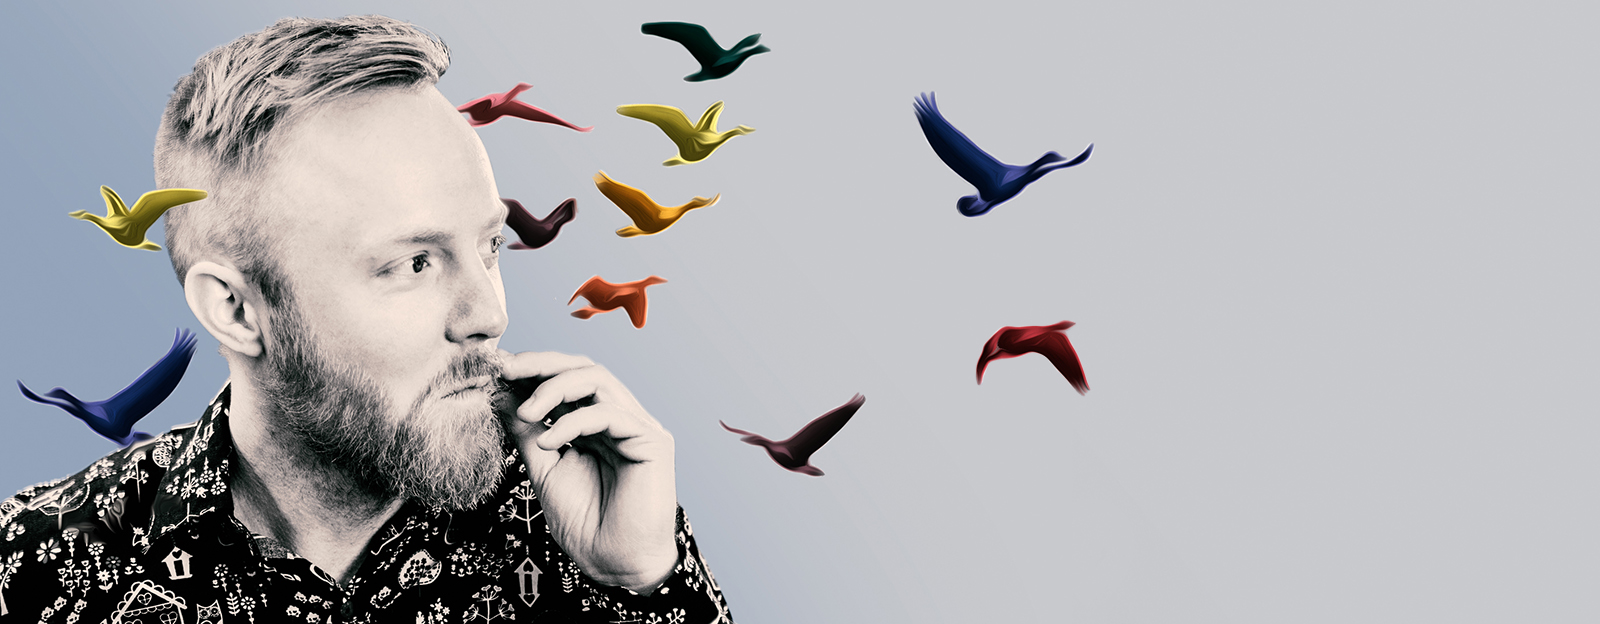 Axel Sondén, och flock fåglar färgsatta i starka färger som flyger bakom honom.